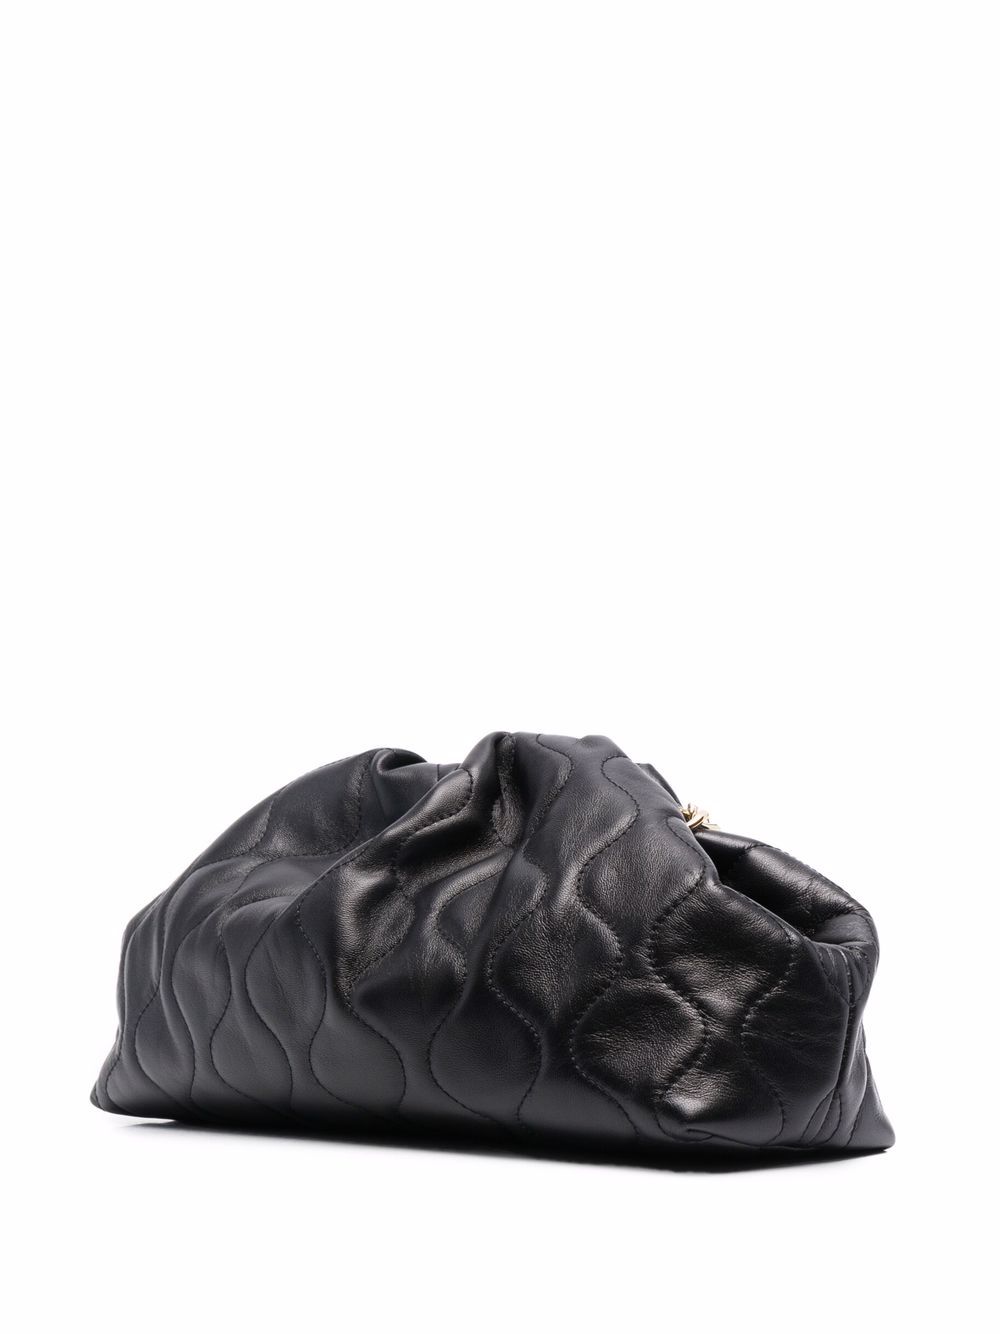 фото Moschino клатч с подвесками